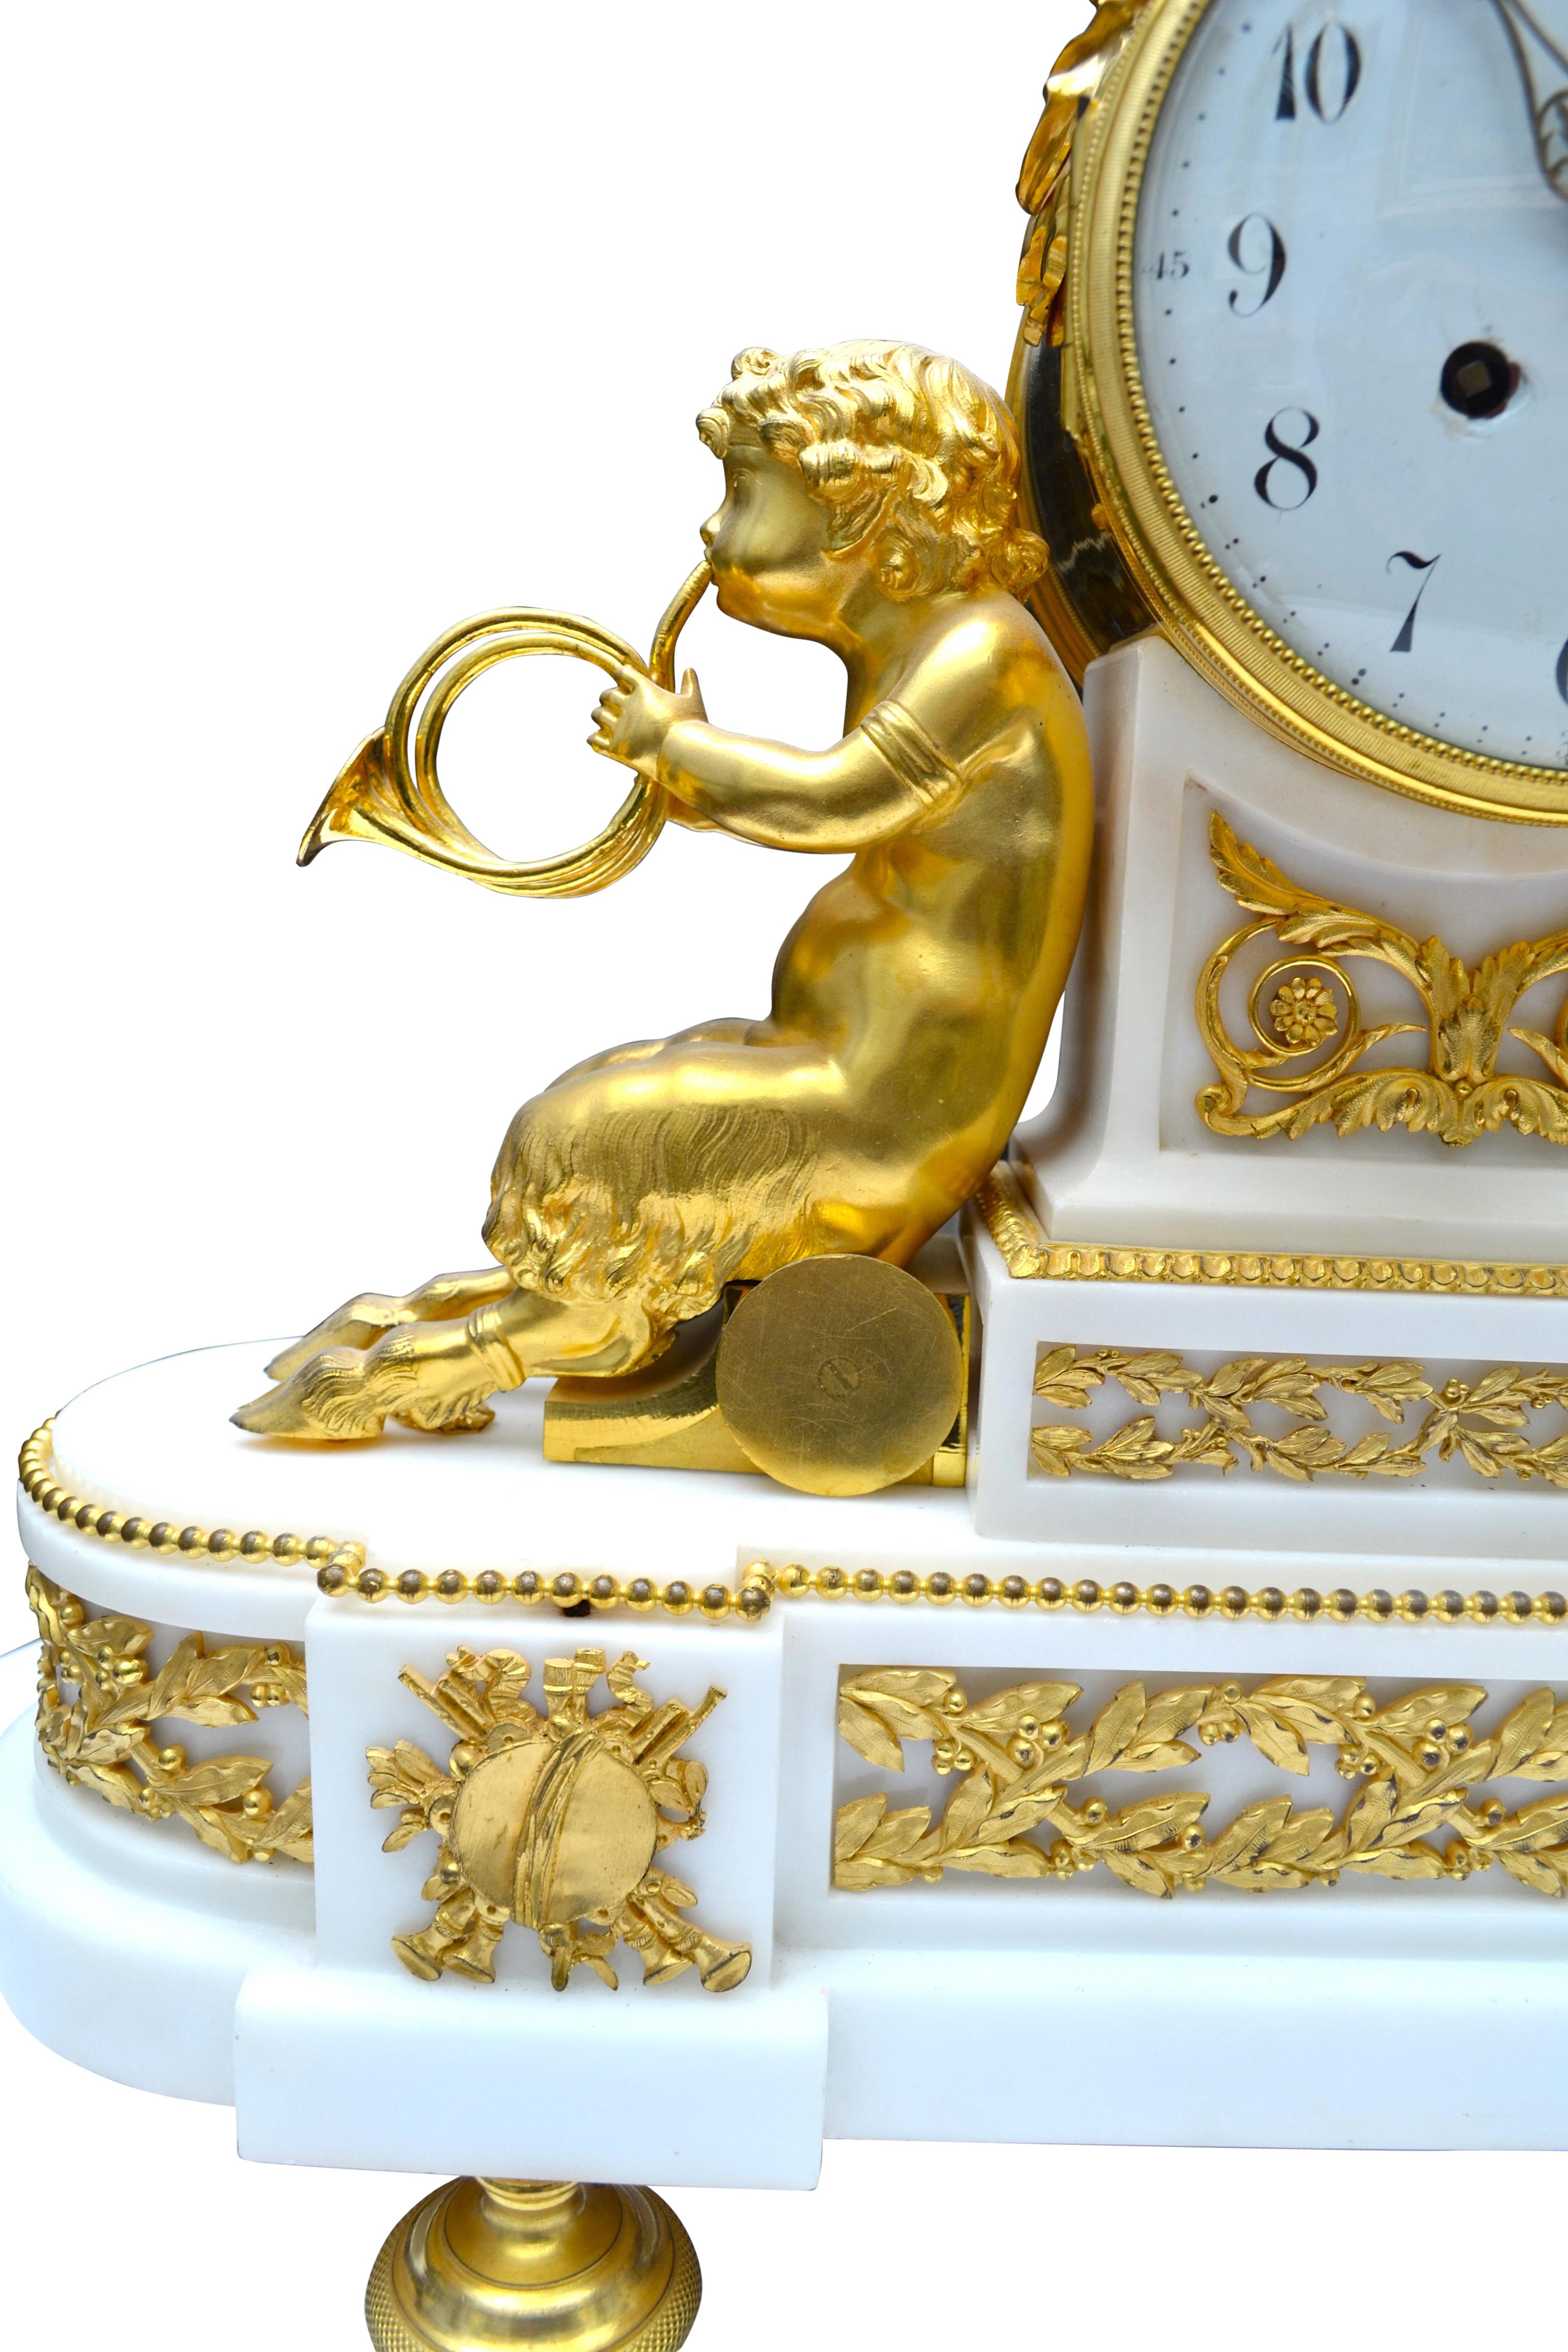 Pendule de style Louis XVI avec Bacchante et satyres musicaux. Le corps de l'horloge présente deux jeunes satyres en bronze doré, chacun tenant des cornes jumelles ; ils s'appuient sur le socle de l'horloge en marbre blanc façonné qui supporte le